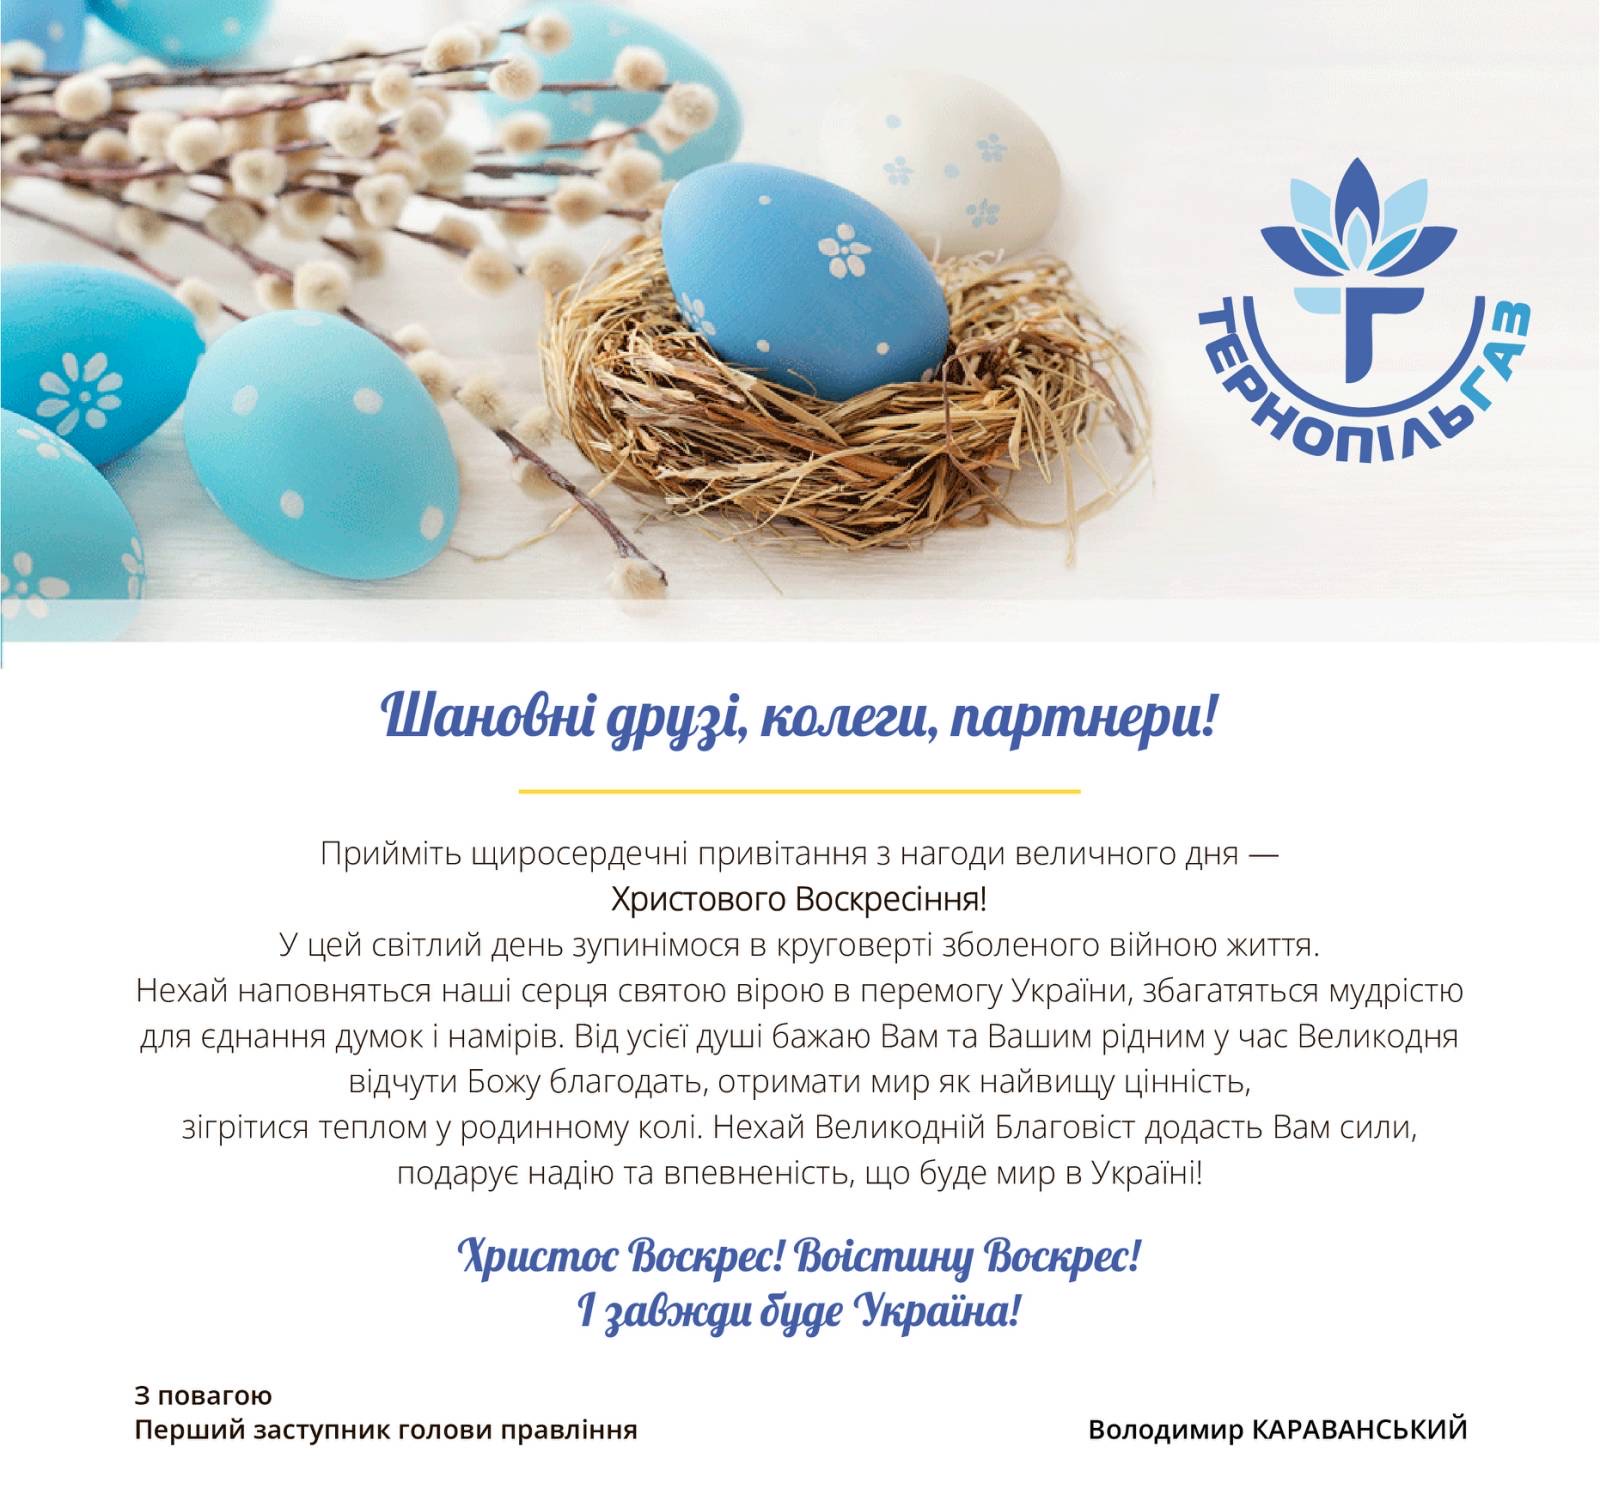 Привітання першого заступника голови правління ПрАТ «Тернопільгаз» з святом Воскресіння Христового 2022!